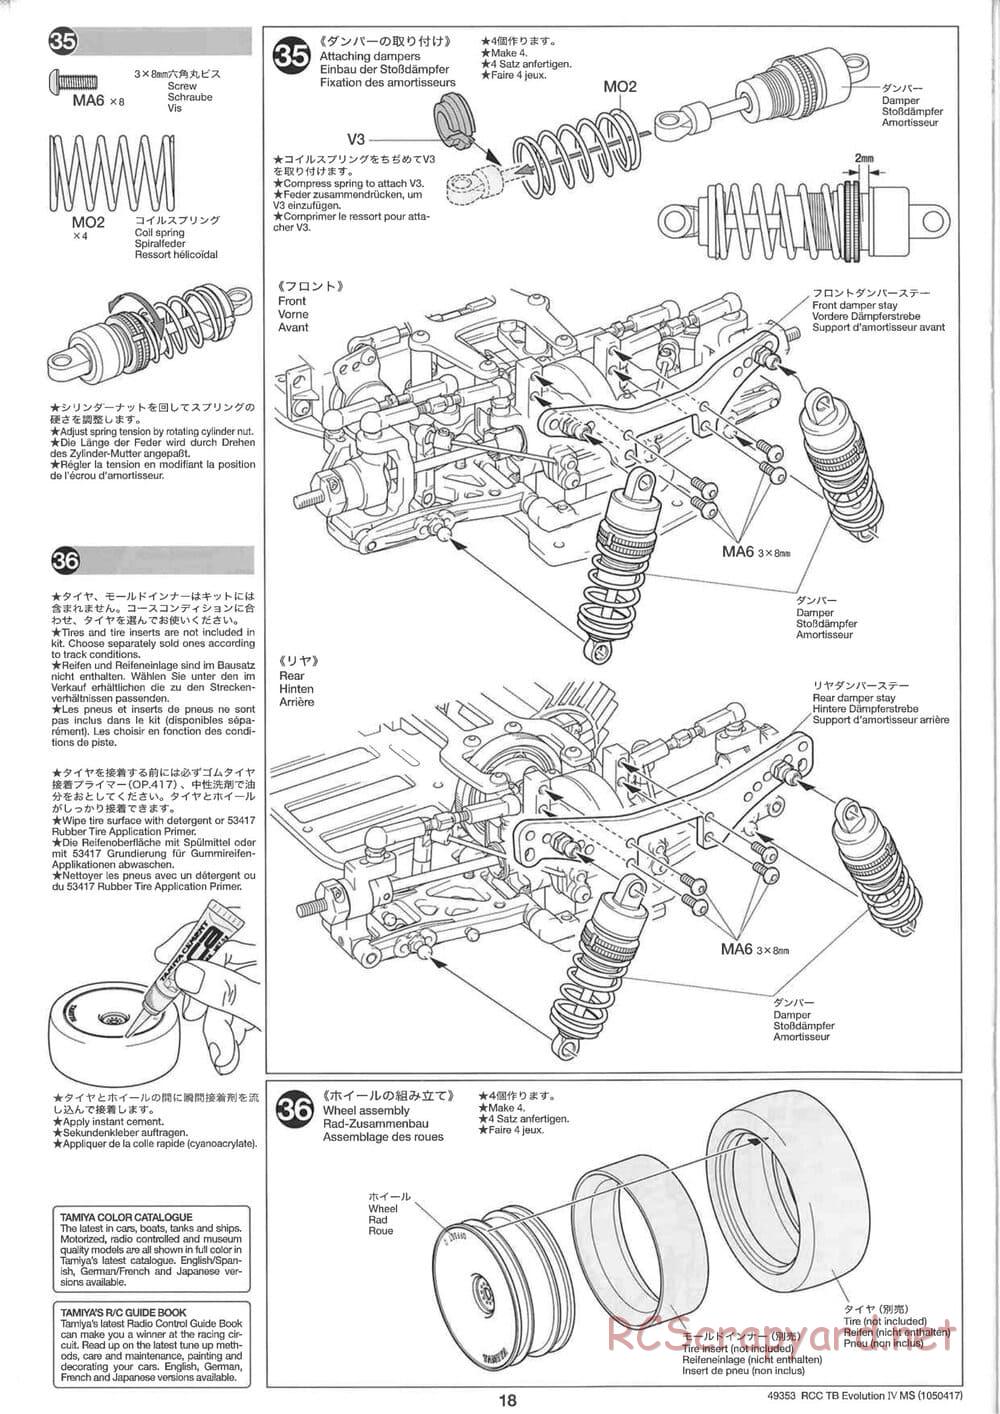 Tamiya - TB Evolution IV MS Chassis - Manual - Page 18